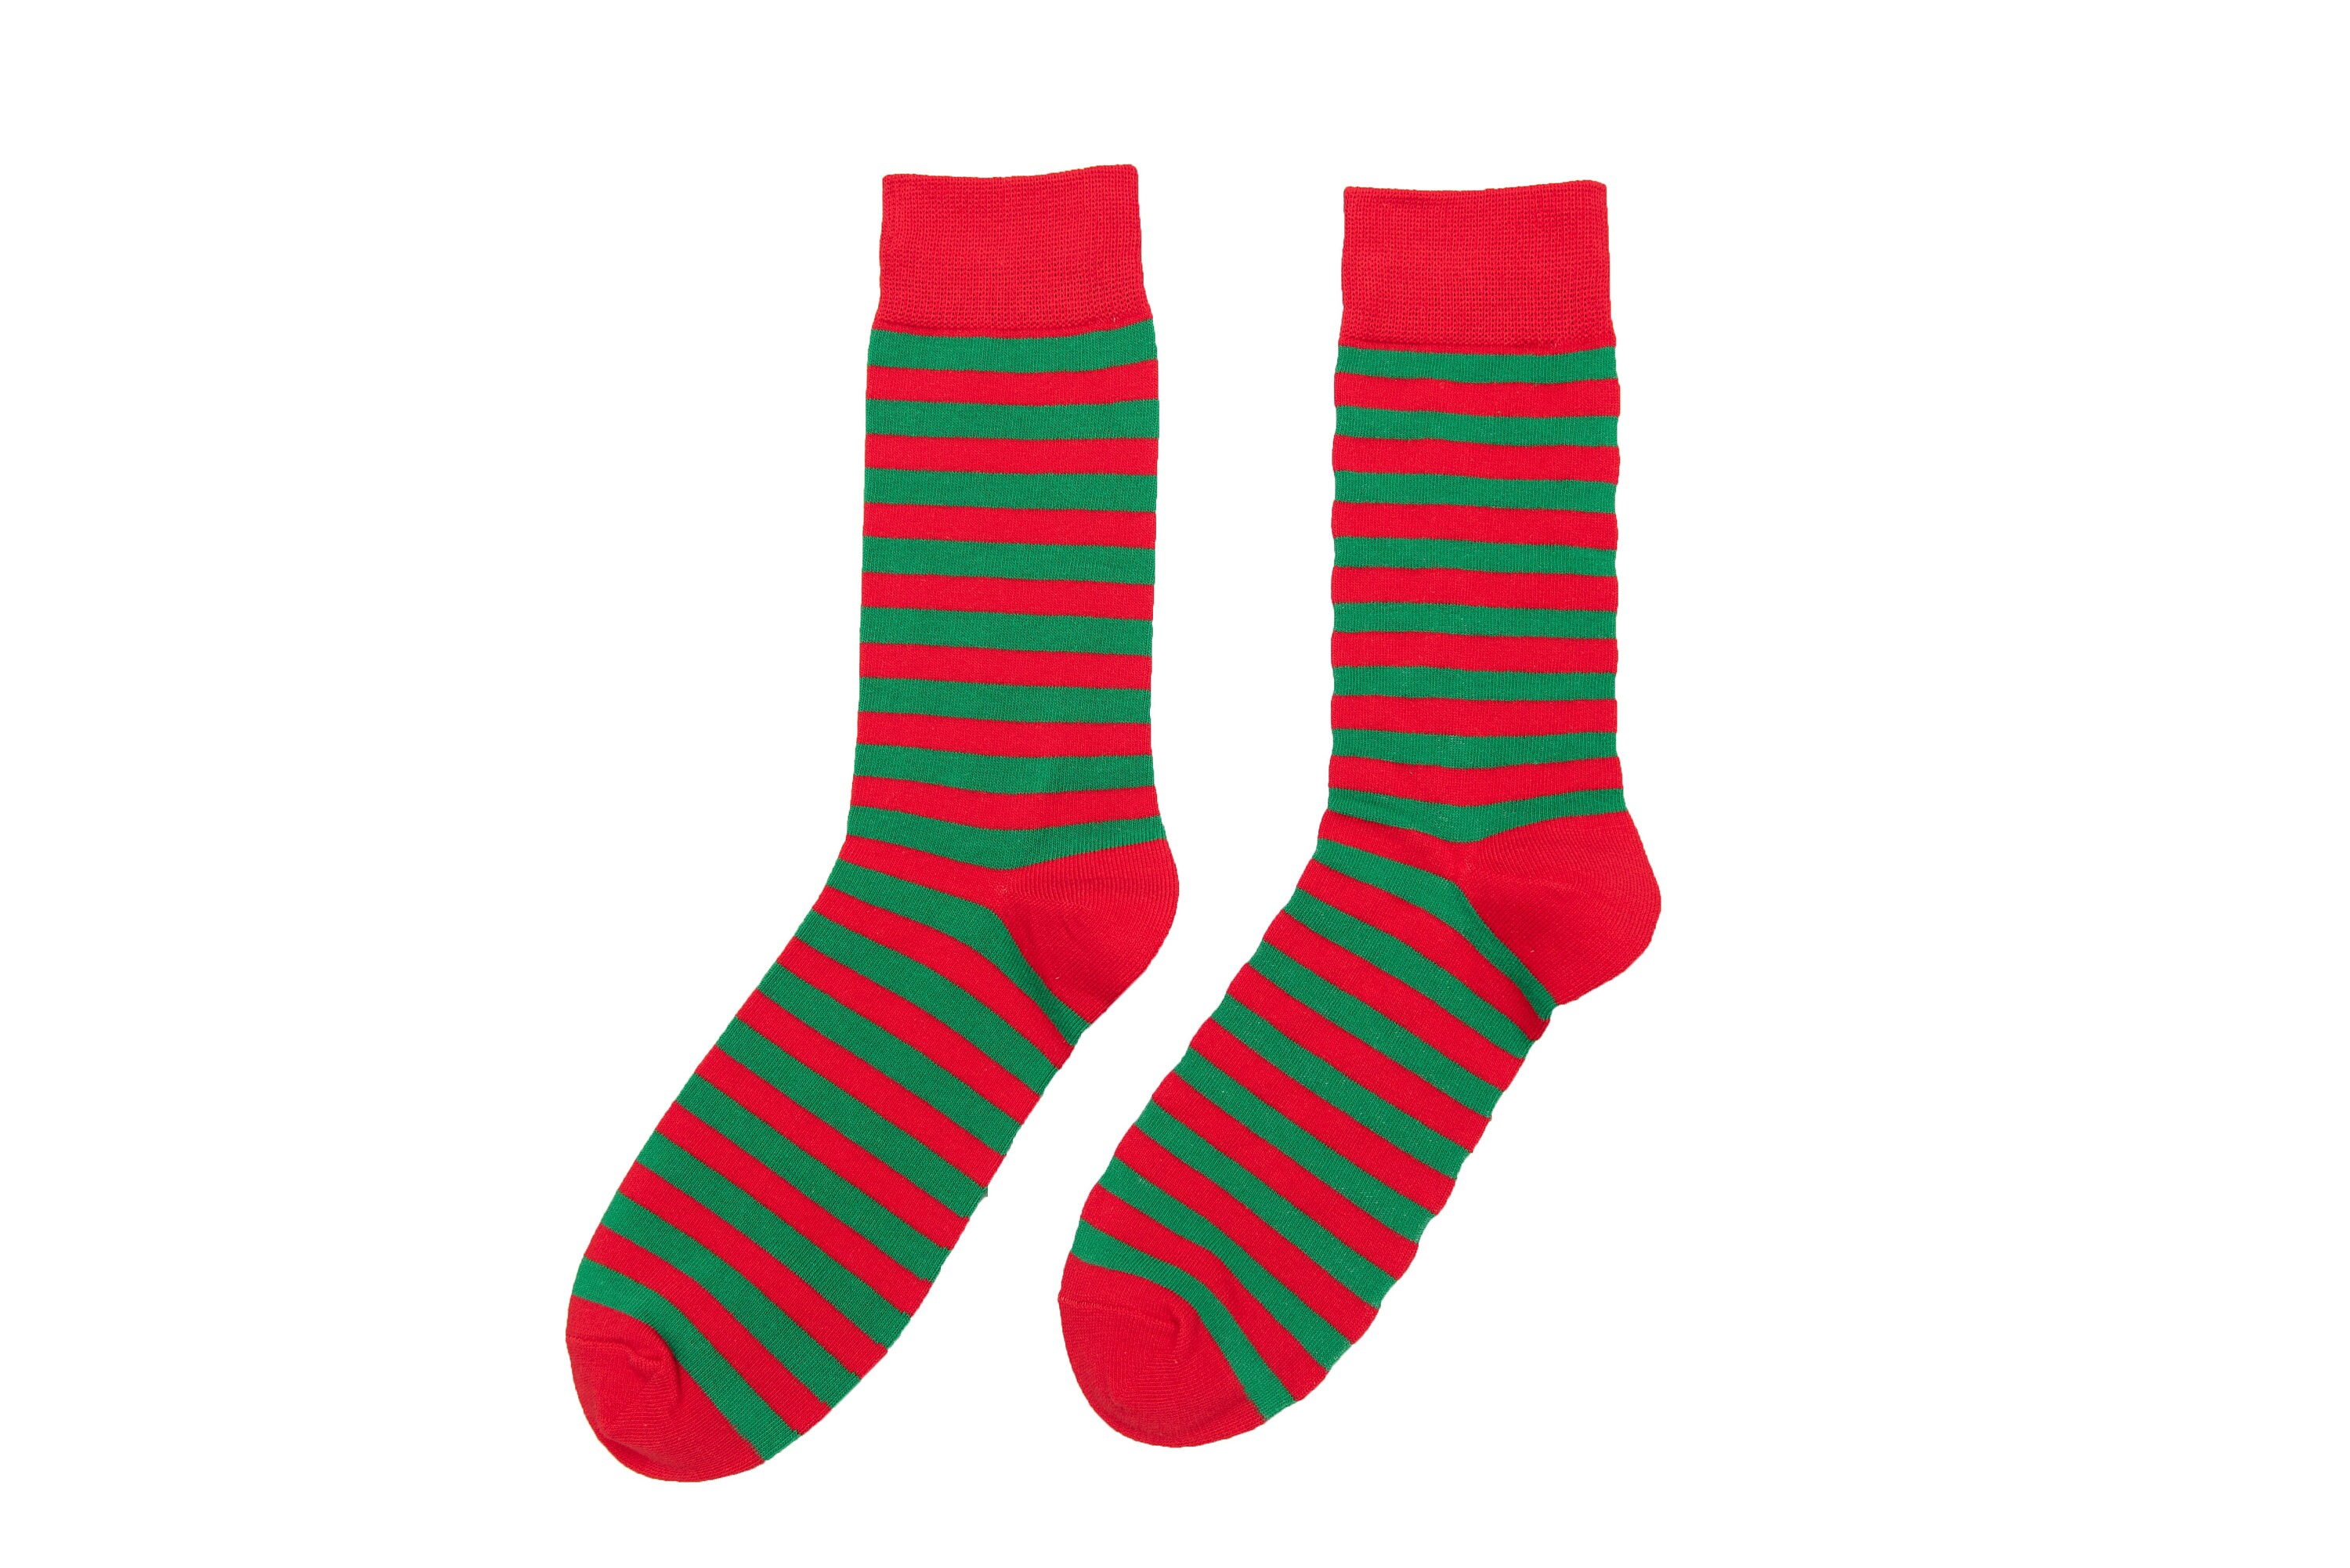 Merry Christmas Red Green Striped Socks for Men Xmas Stripe - Etsy UK